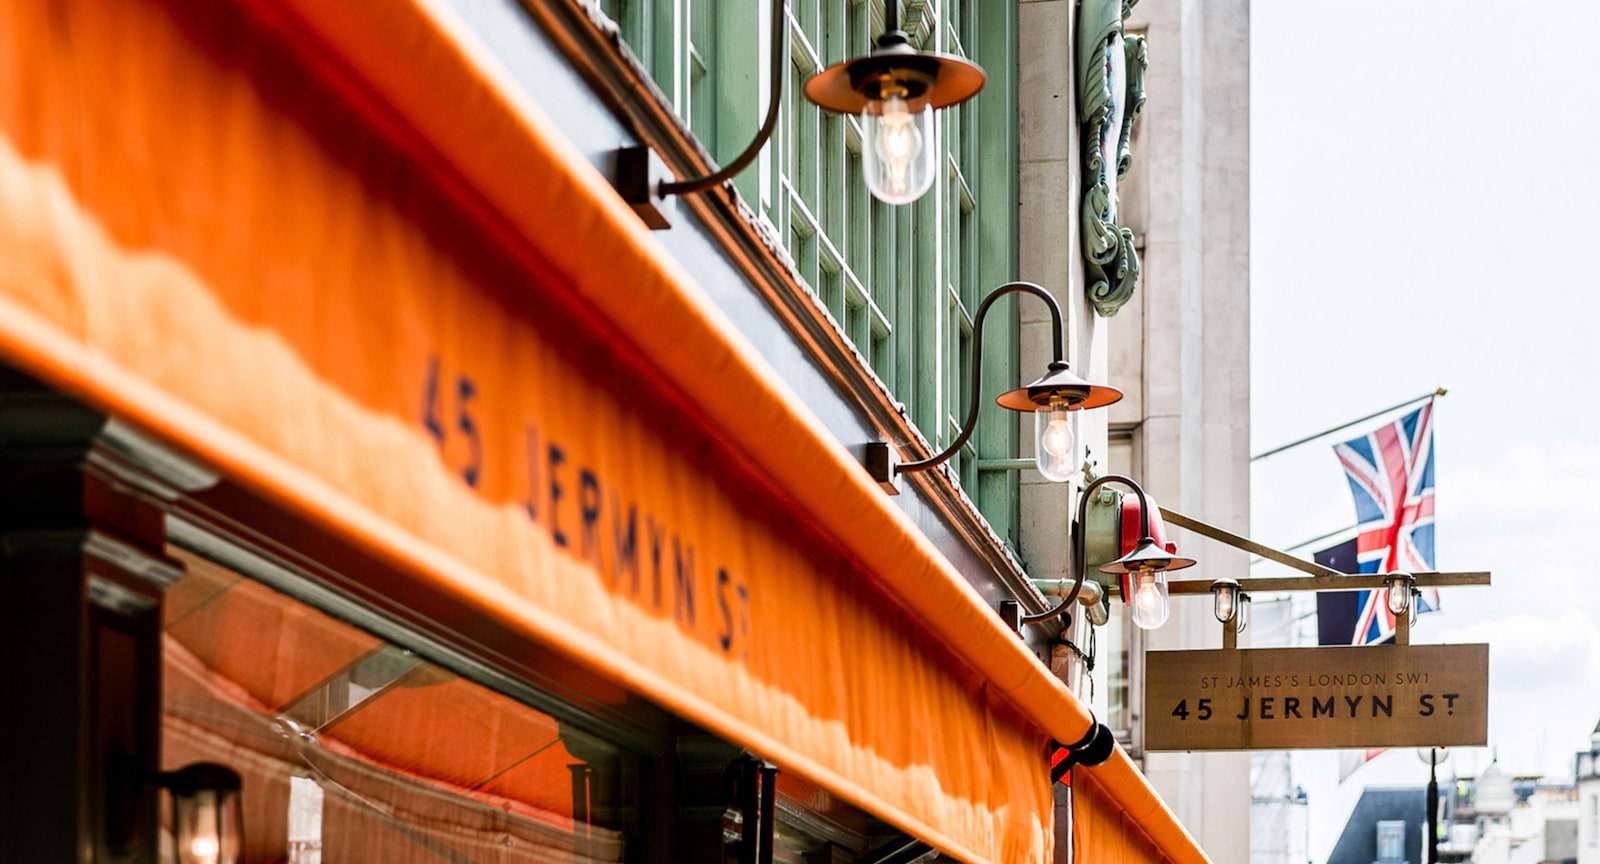 45 Jermyn Street – British restaurants